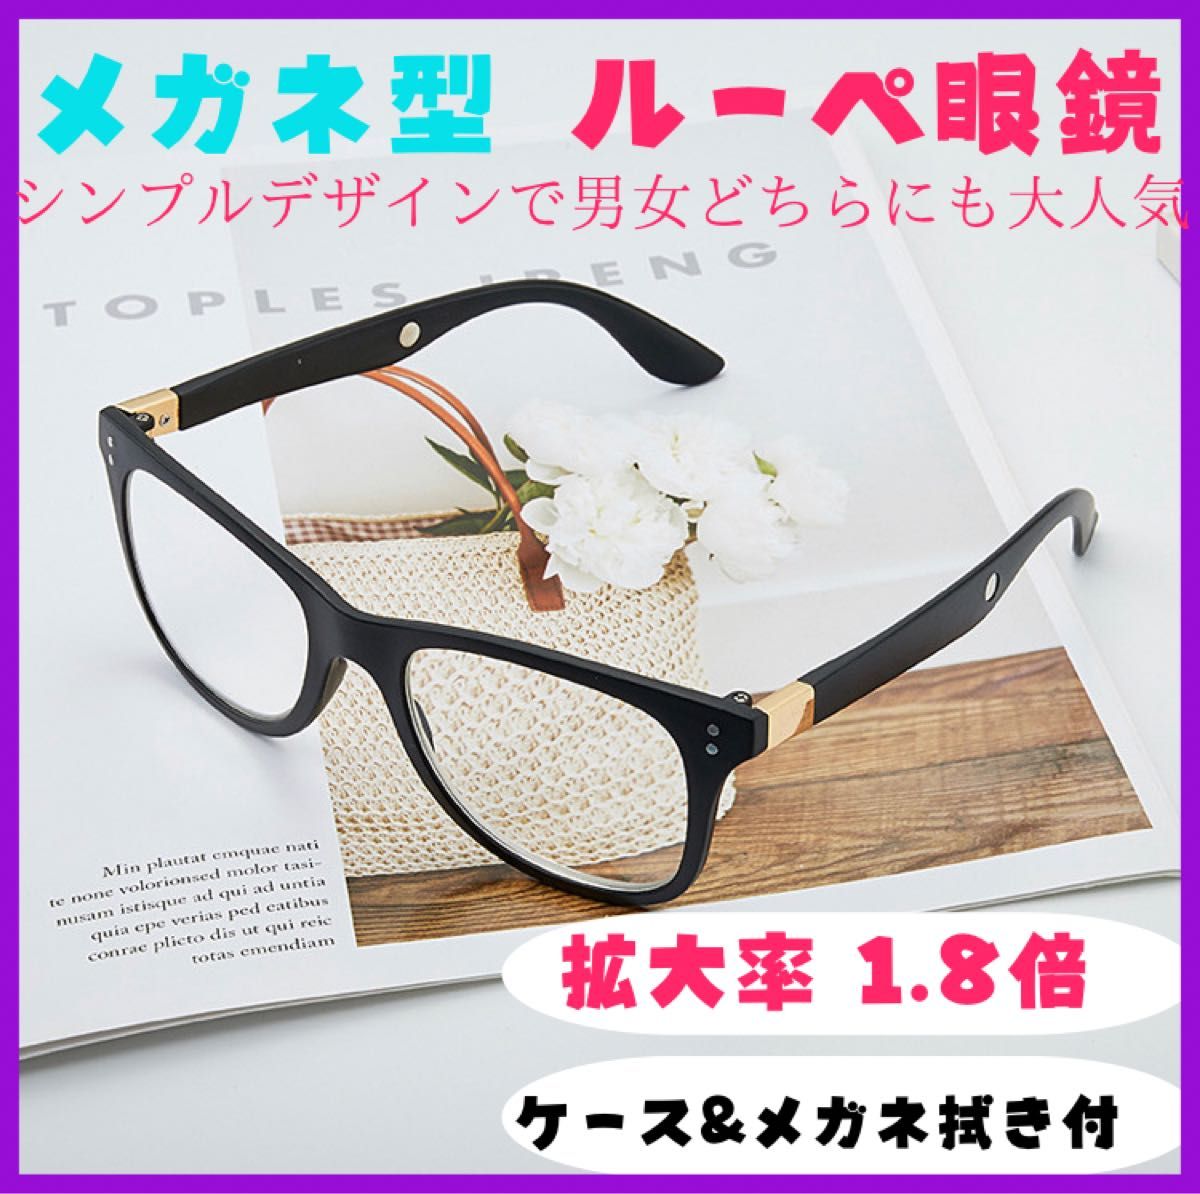 最新入荷】 GOKEI 拡大鏡 めがね1.8倍 ルーペ メガネルーペ メガネ型拡大鏡 眼鏡ルーペ 拡大 倍数 ルーペメガネ 7点セット ブラック 